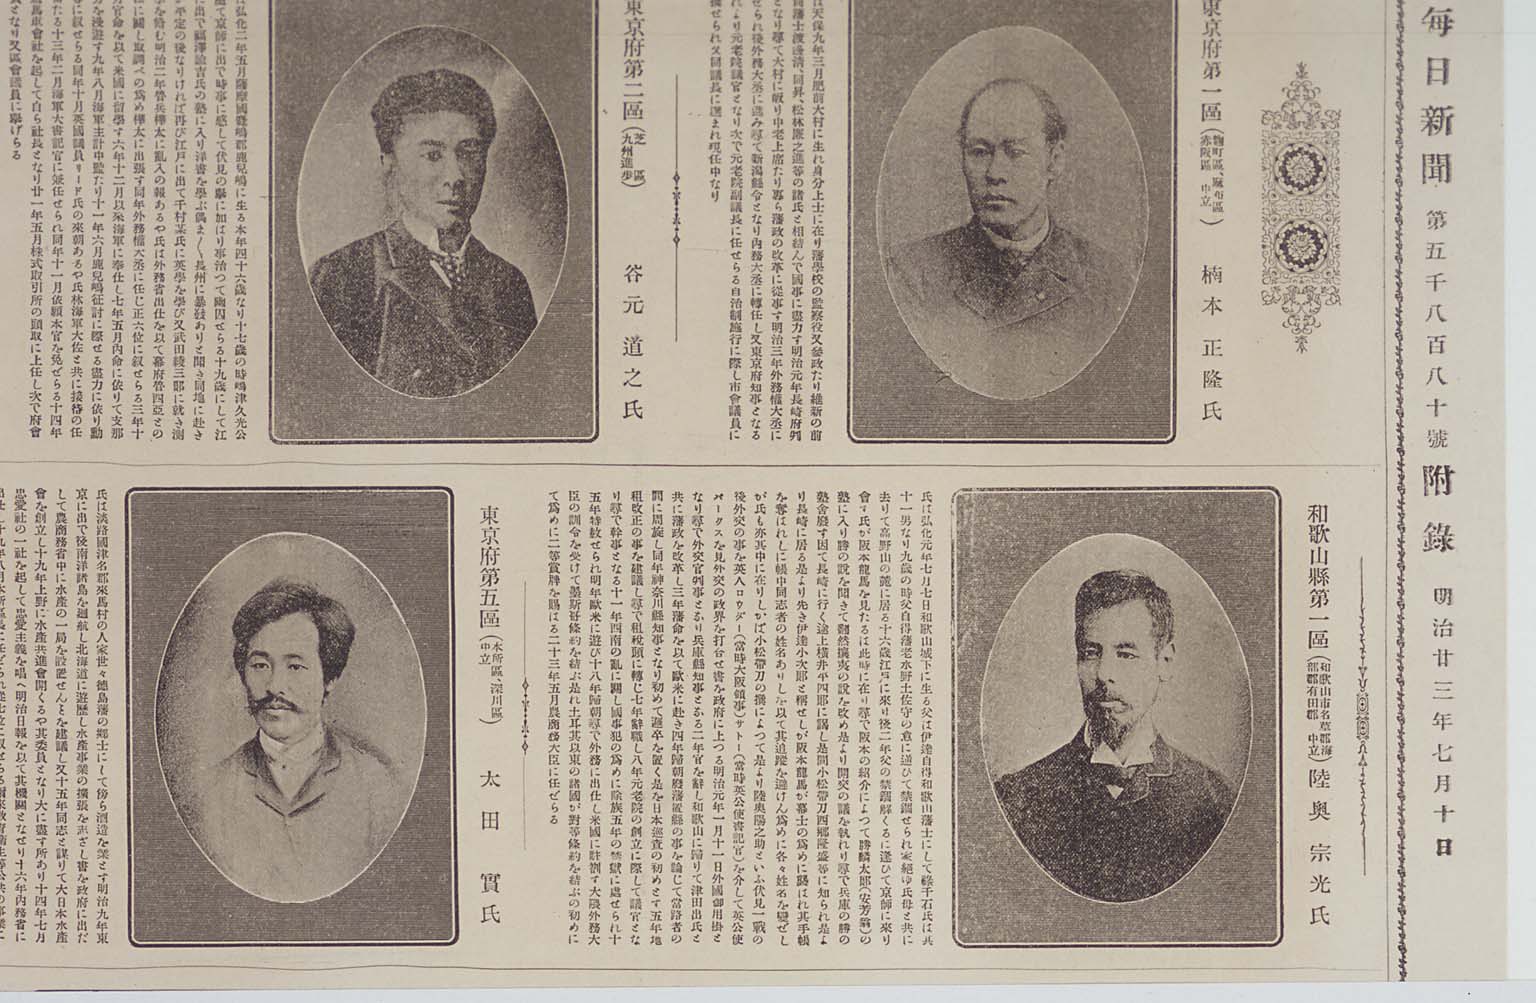 Article introducing MUTSU Munemitsu in the "Shugiin Giin Shozo fu Shoden", supplement to the Mainichi Shinbun issue of July 10, 1890, or Meiji 23(larger)